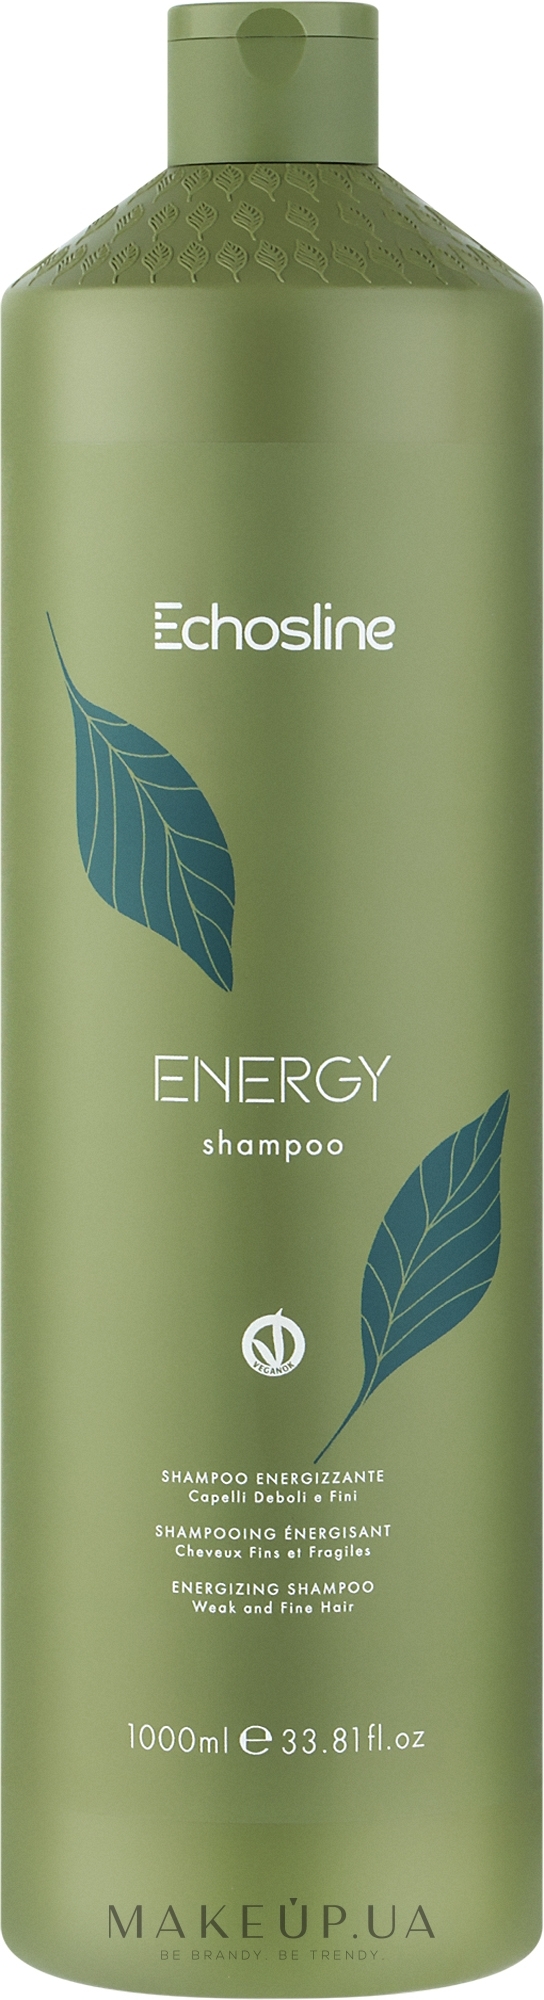 Шампунь для волос - Echosline Energy Shampoo — фото 1000ml